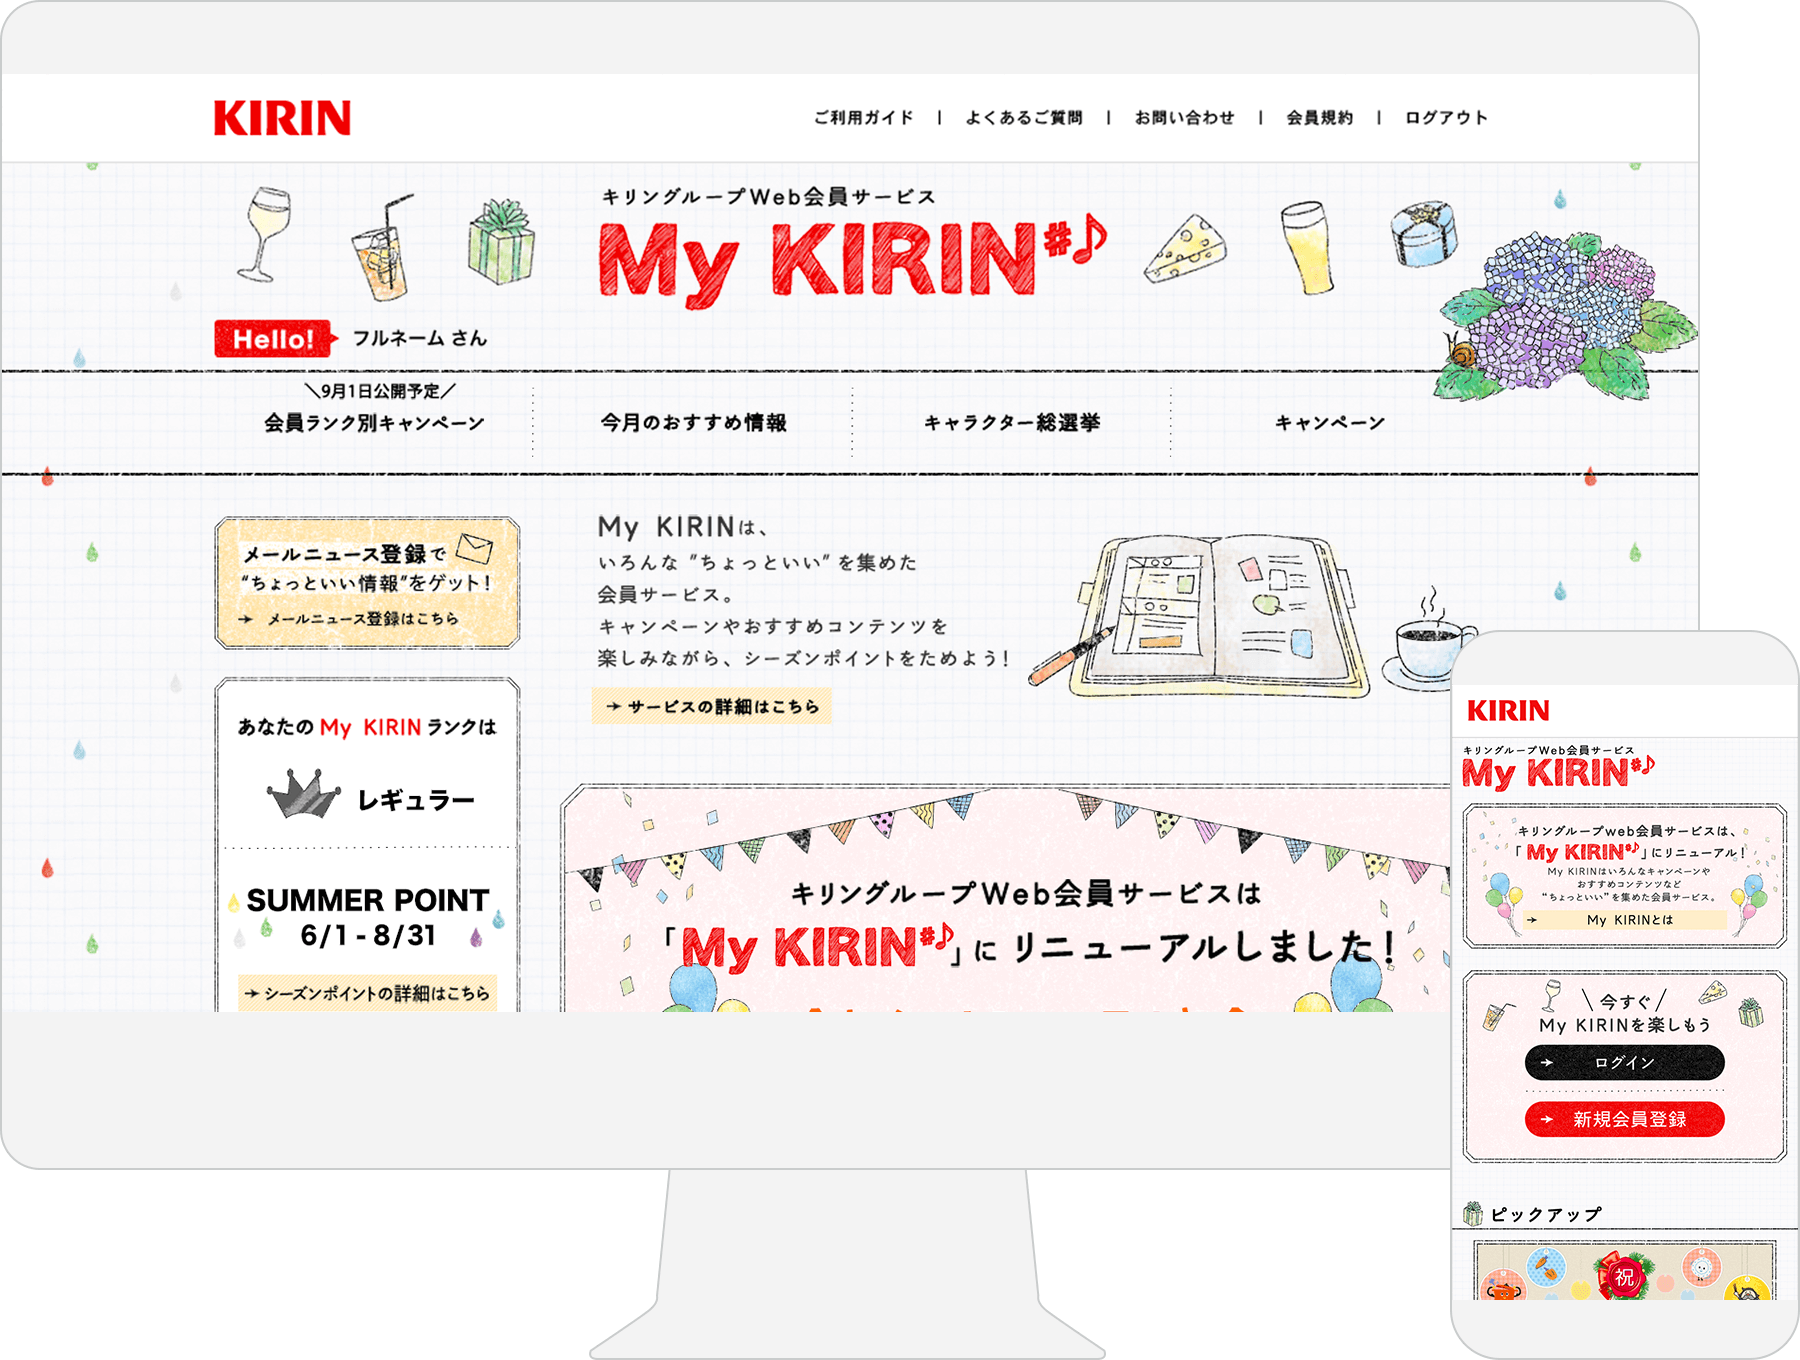 KIRIN group ”My KIRIN” / Web Member Services